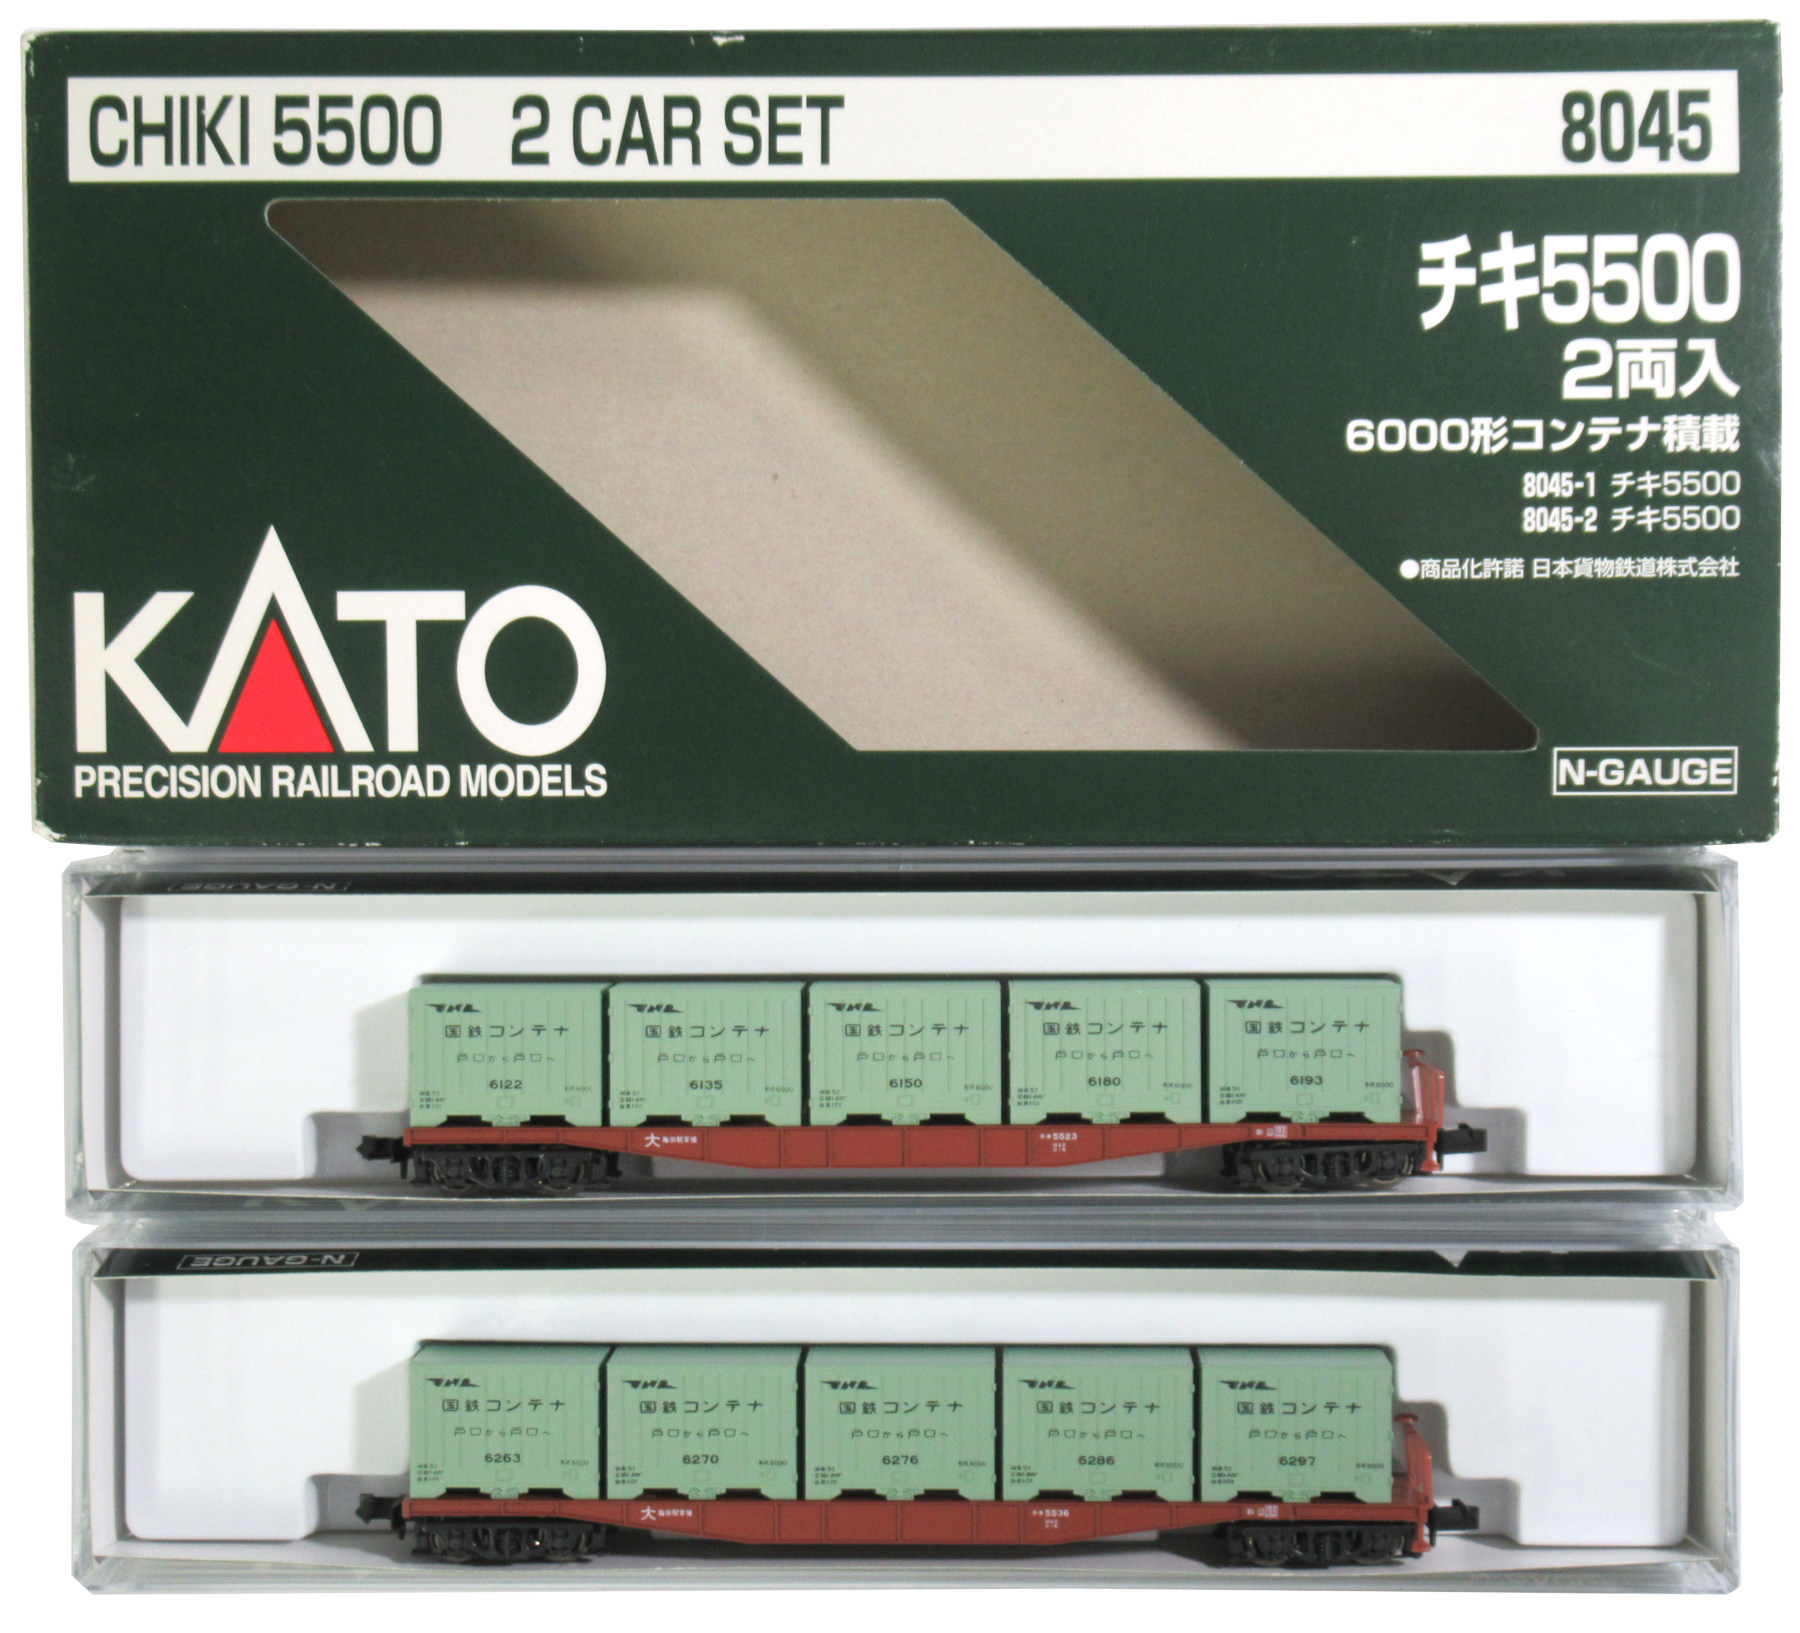 低価お買い得新品未使用、8044 KATO チキ5000 2両入 5000形コンテナ搭載 鉄道模型